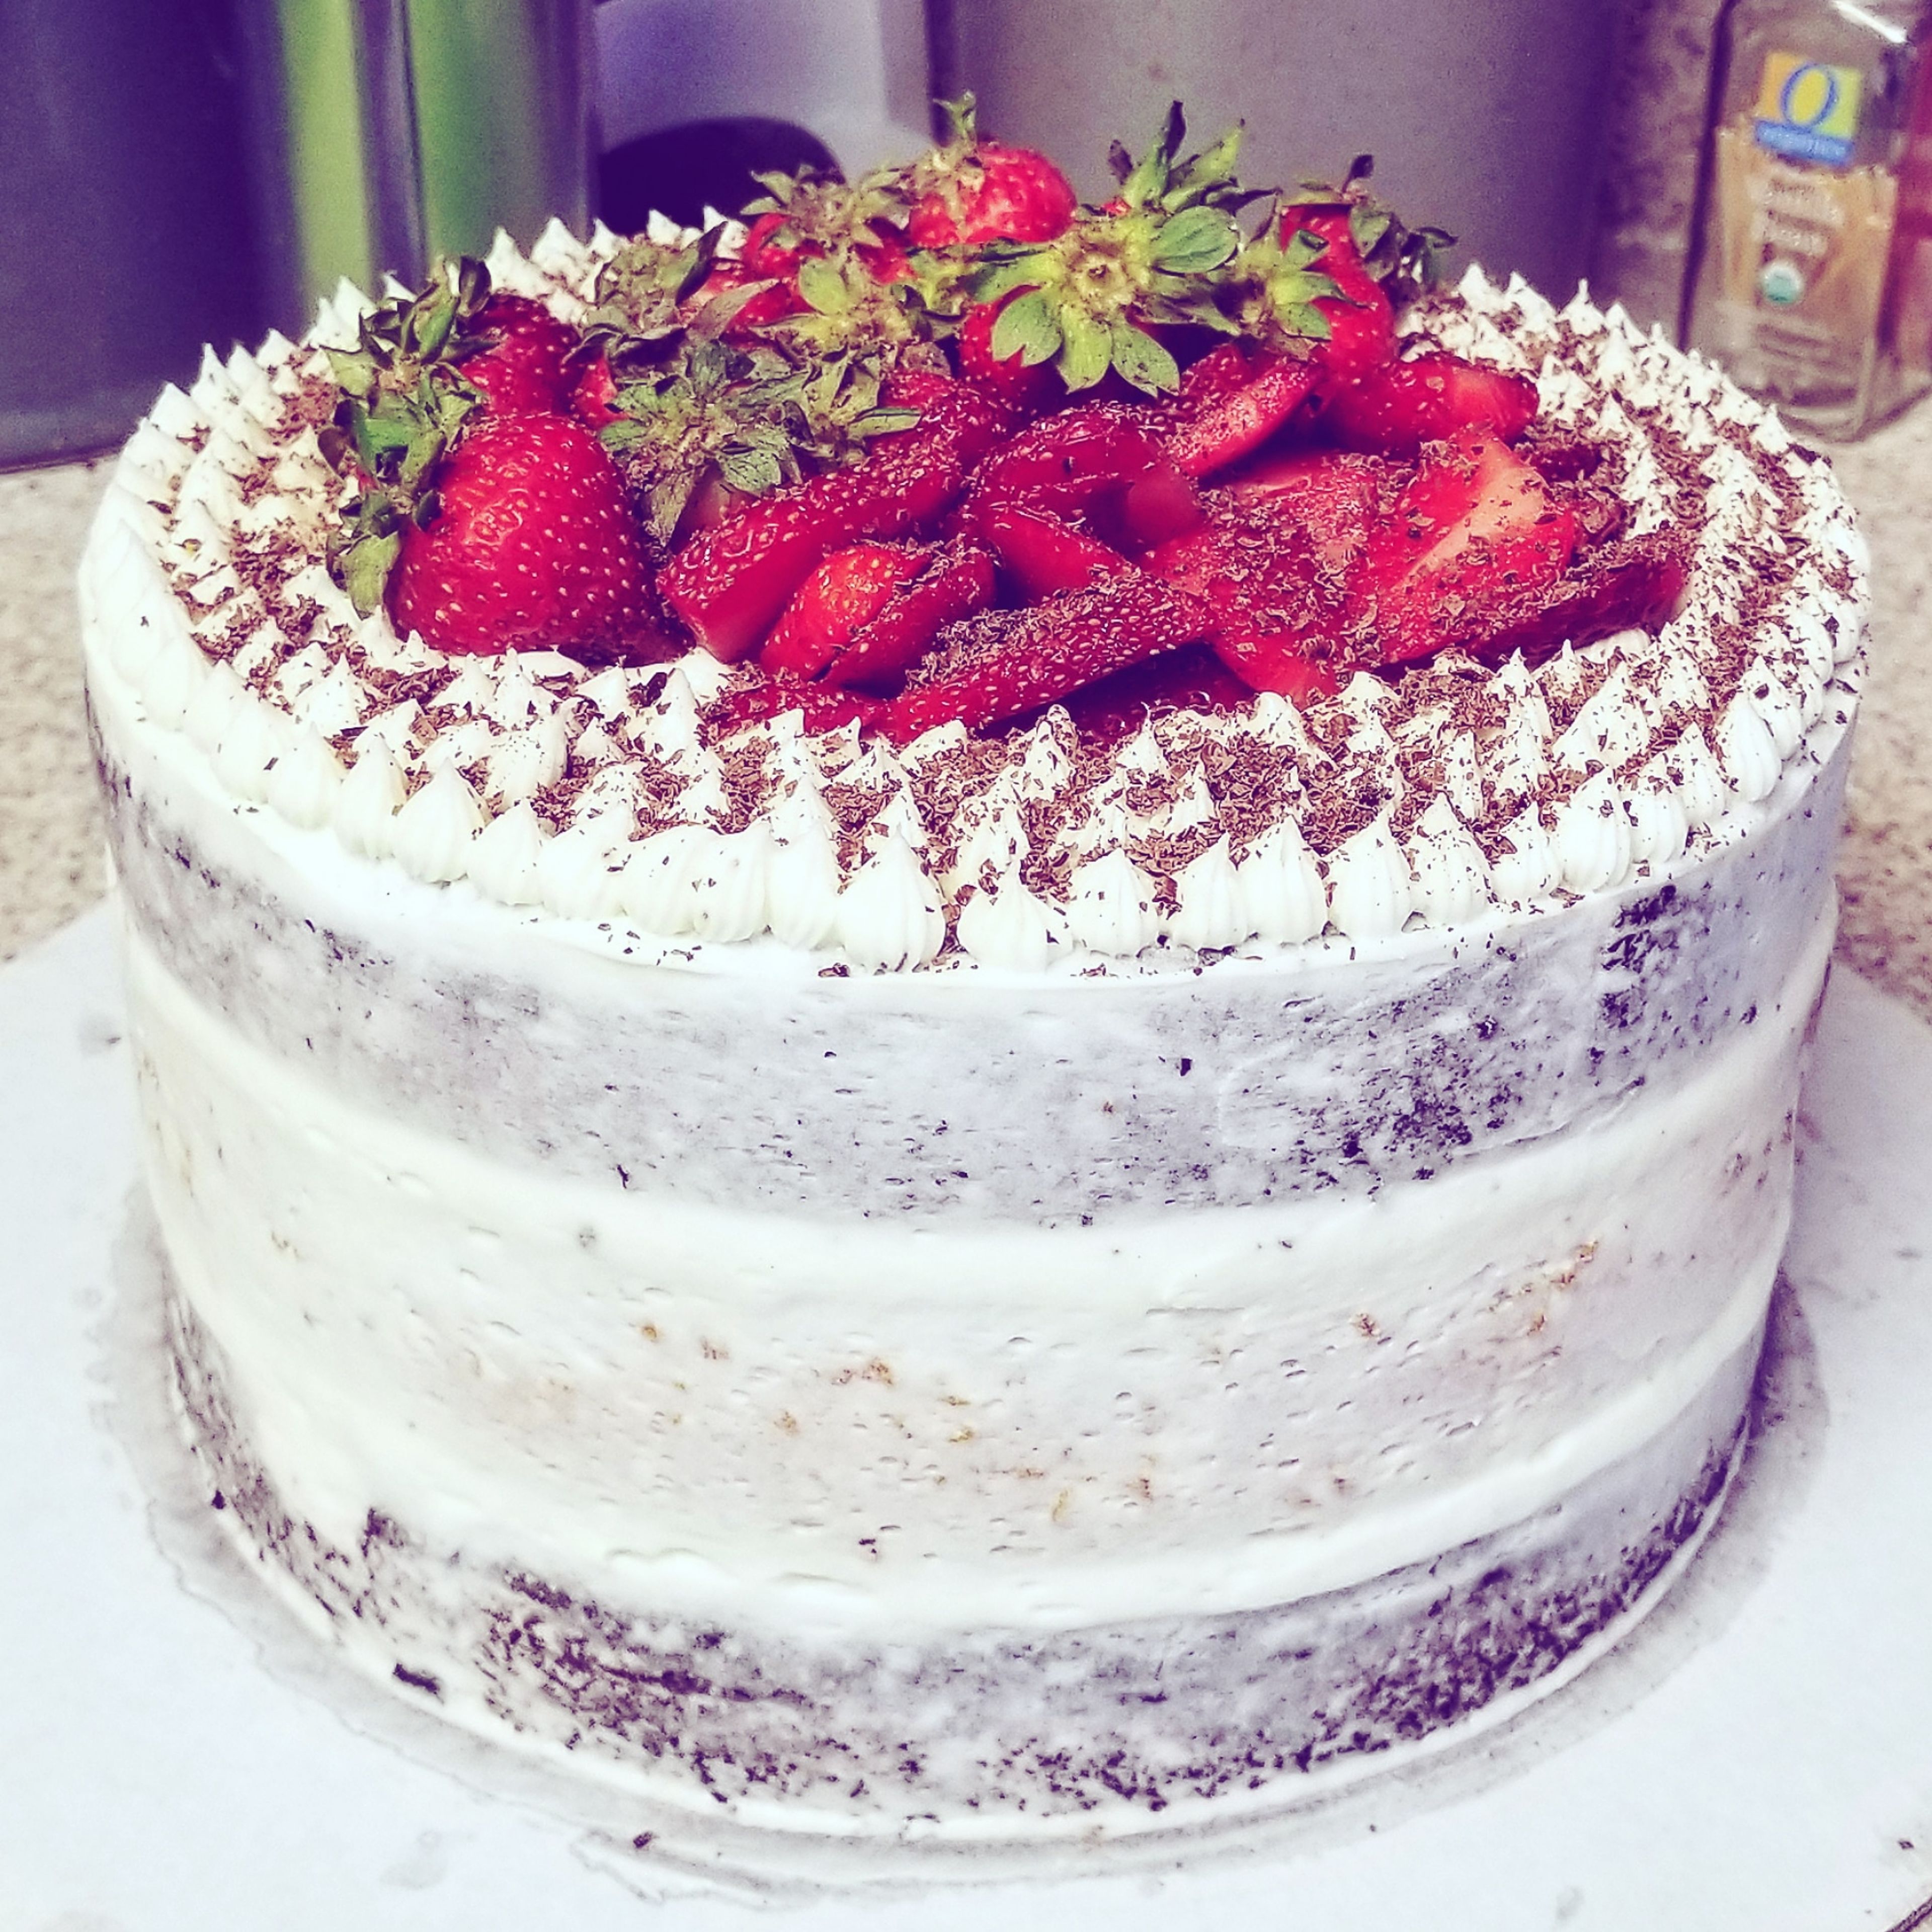 Chocolate-strawberry naked cake